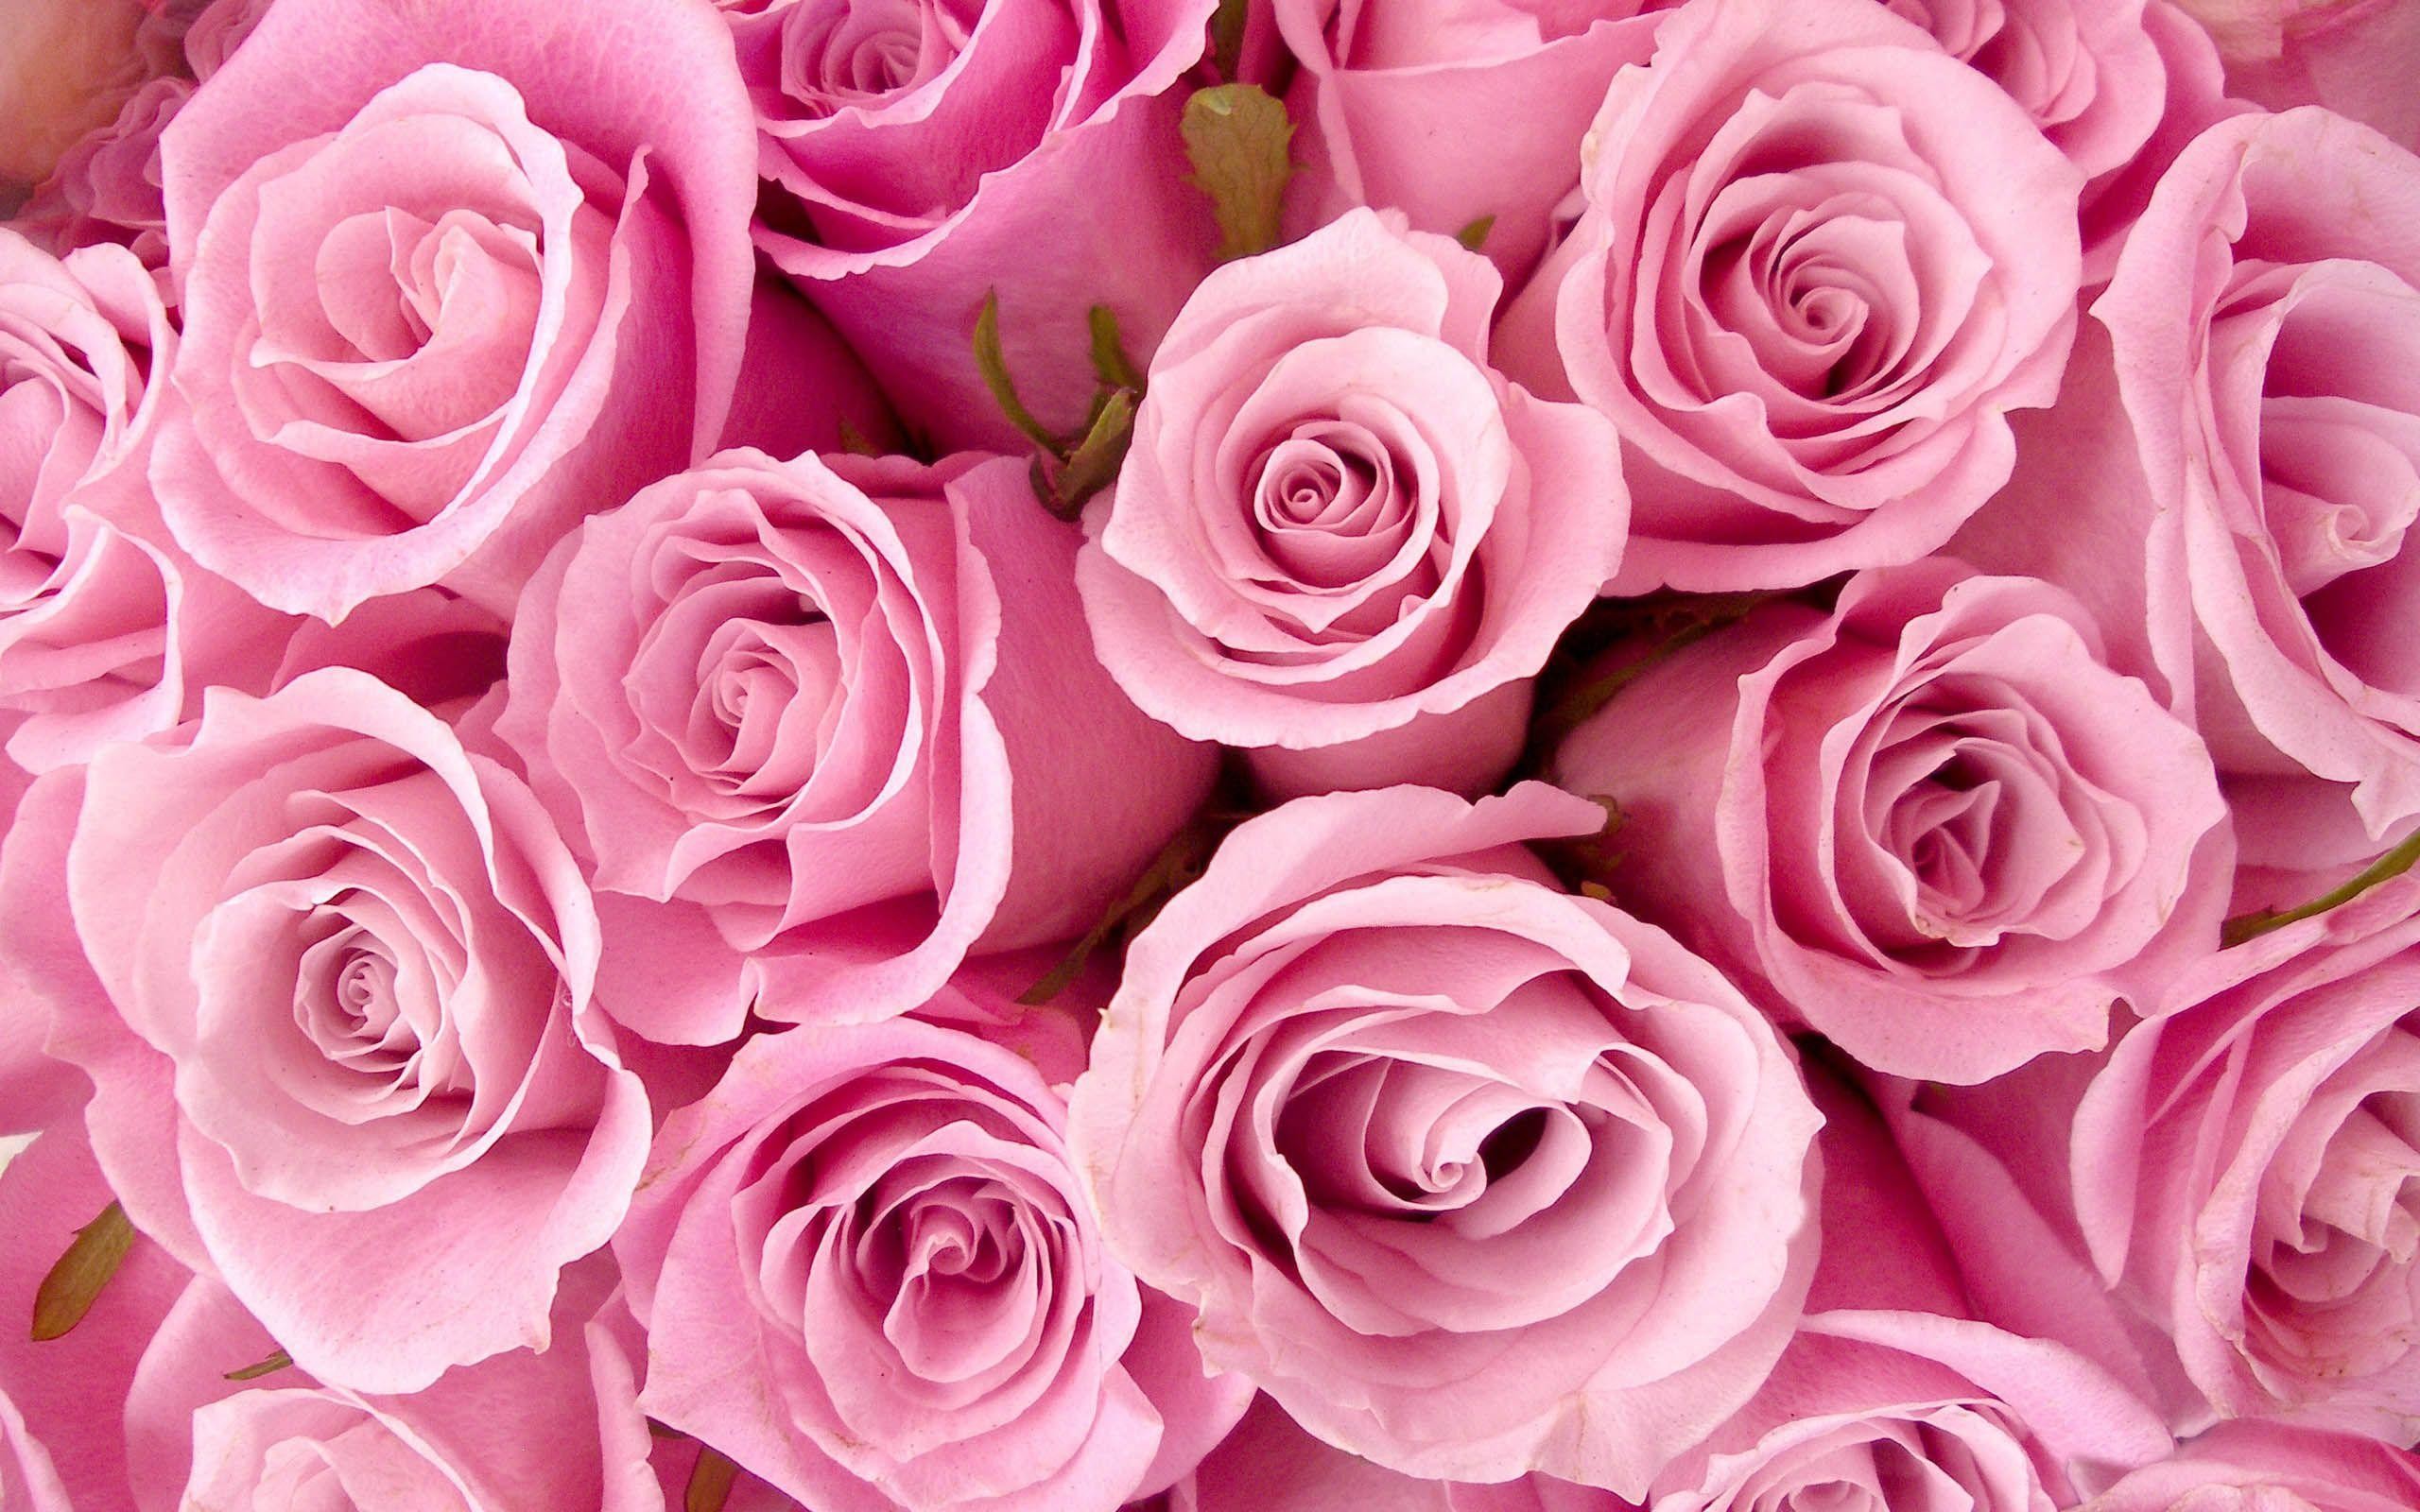 Nền hồng đẹp: Với tông màu hồng quyến rũ, nền hồng đẹp này sẽ đặt nền tảng cho một không gian sống đầy sức sống. Tận hưởng cảm giác nữ tính và tràn đầy sức sống khi bạn sống trong một không gian được trang trí với màu hồng tươi tắn này.